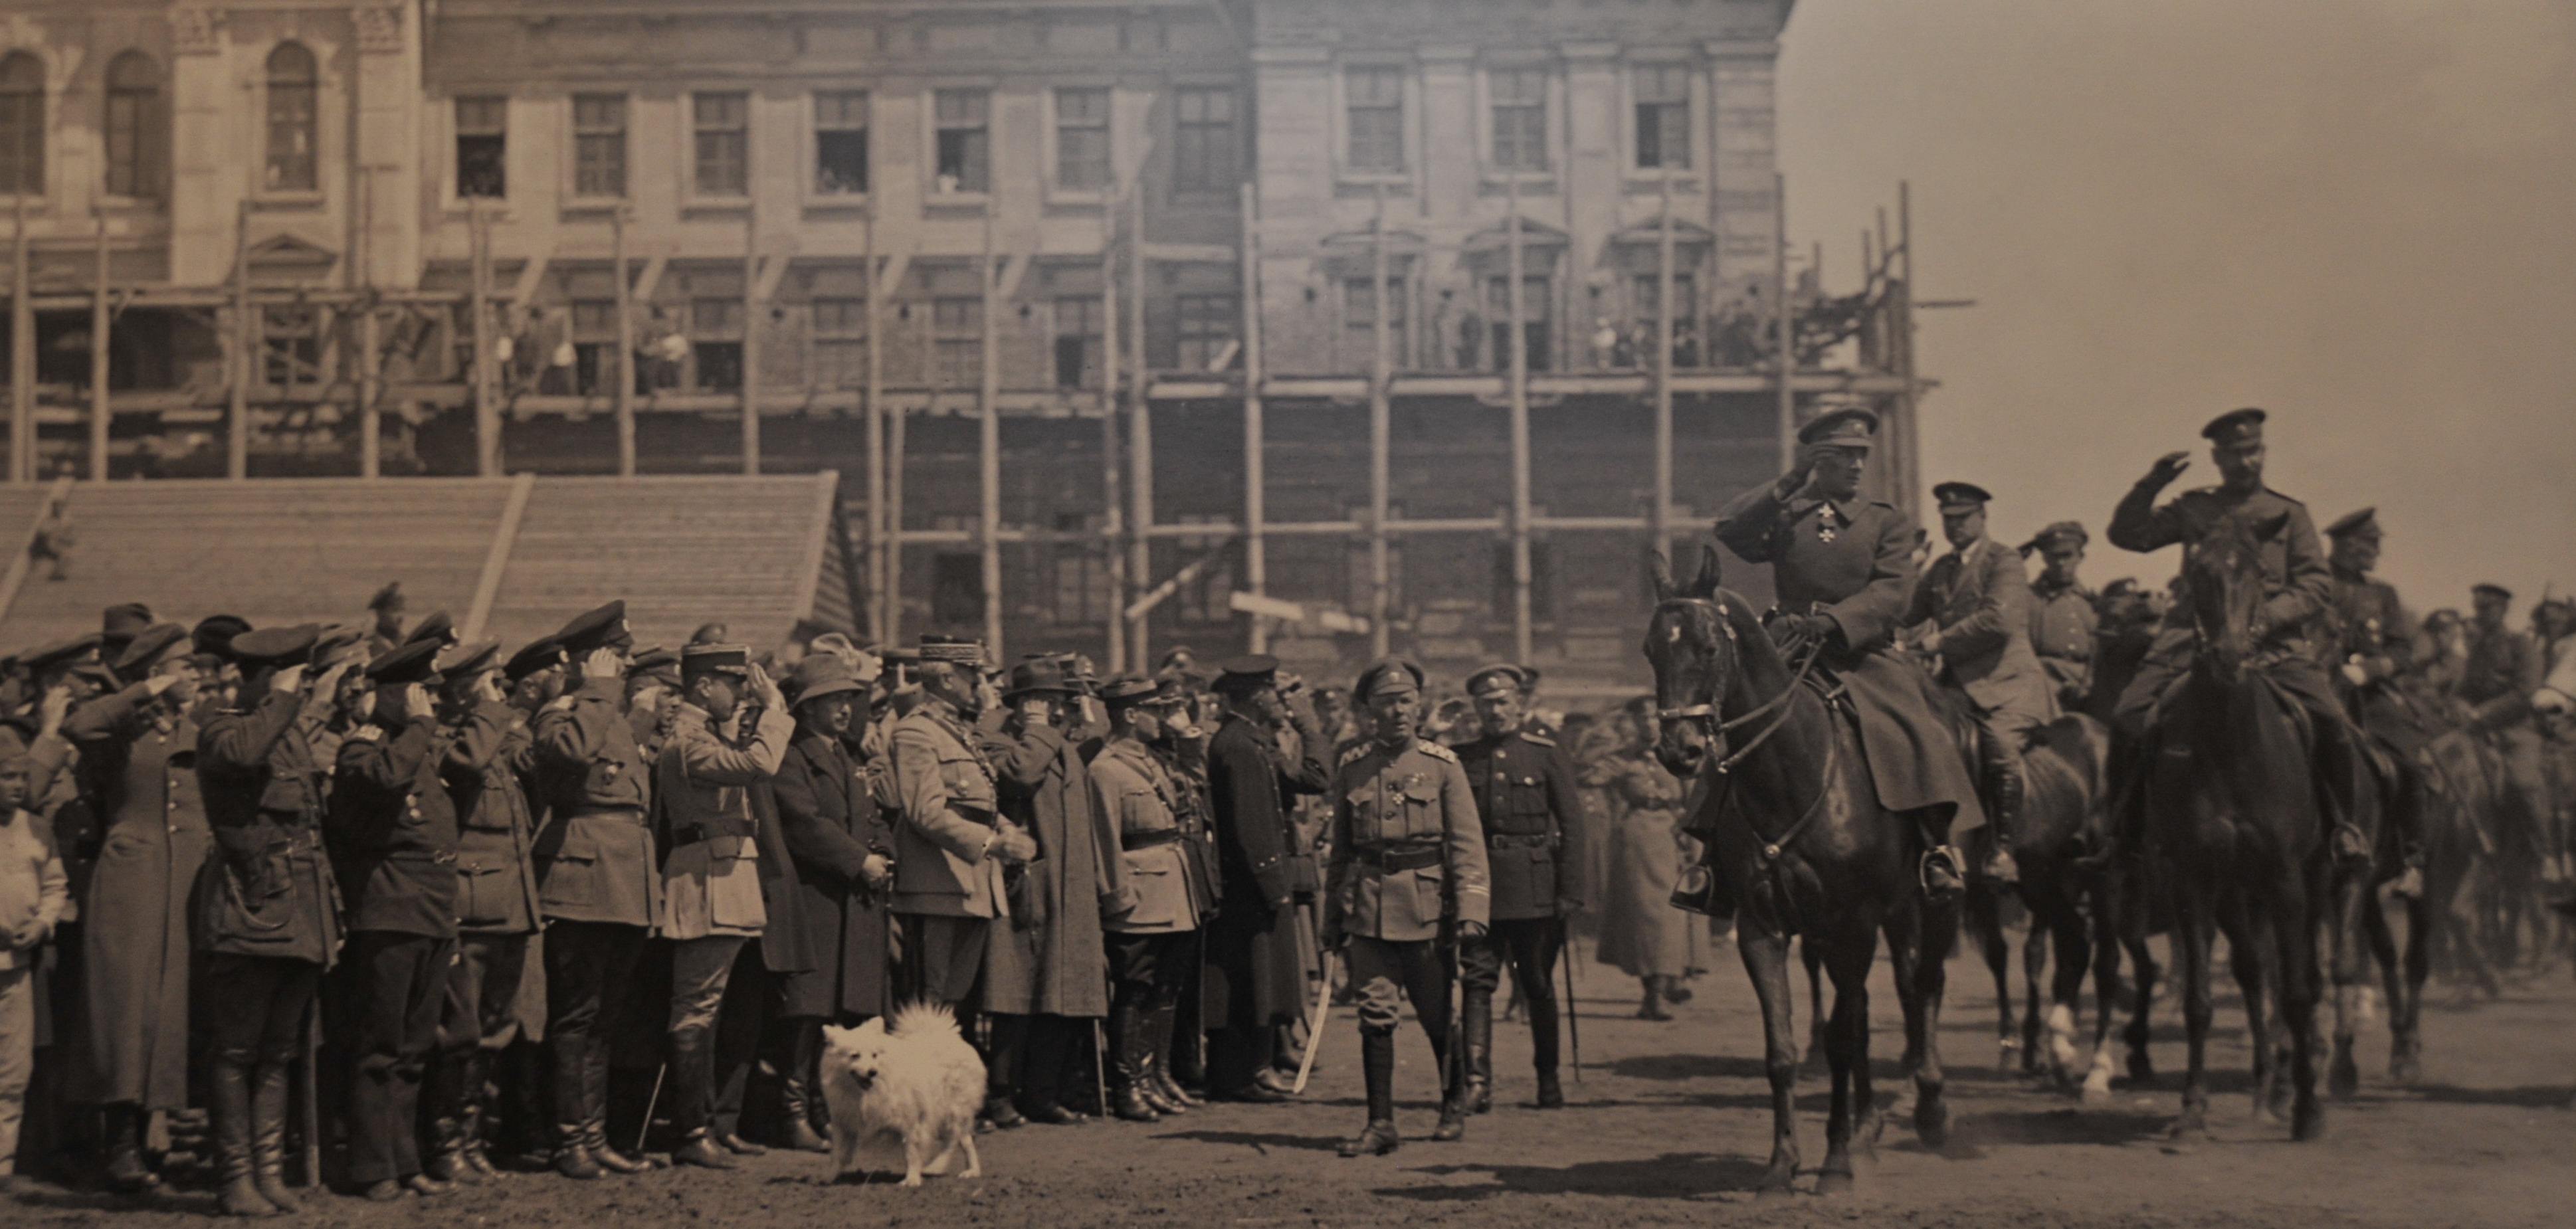 А. В. Колчак, генерал М. Жанен и представители иностранных миссий на смотре армии. Омск, апрель 1919 г.